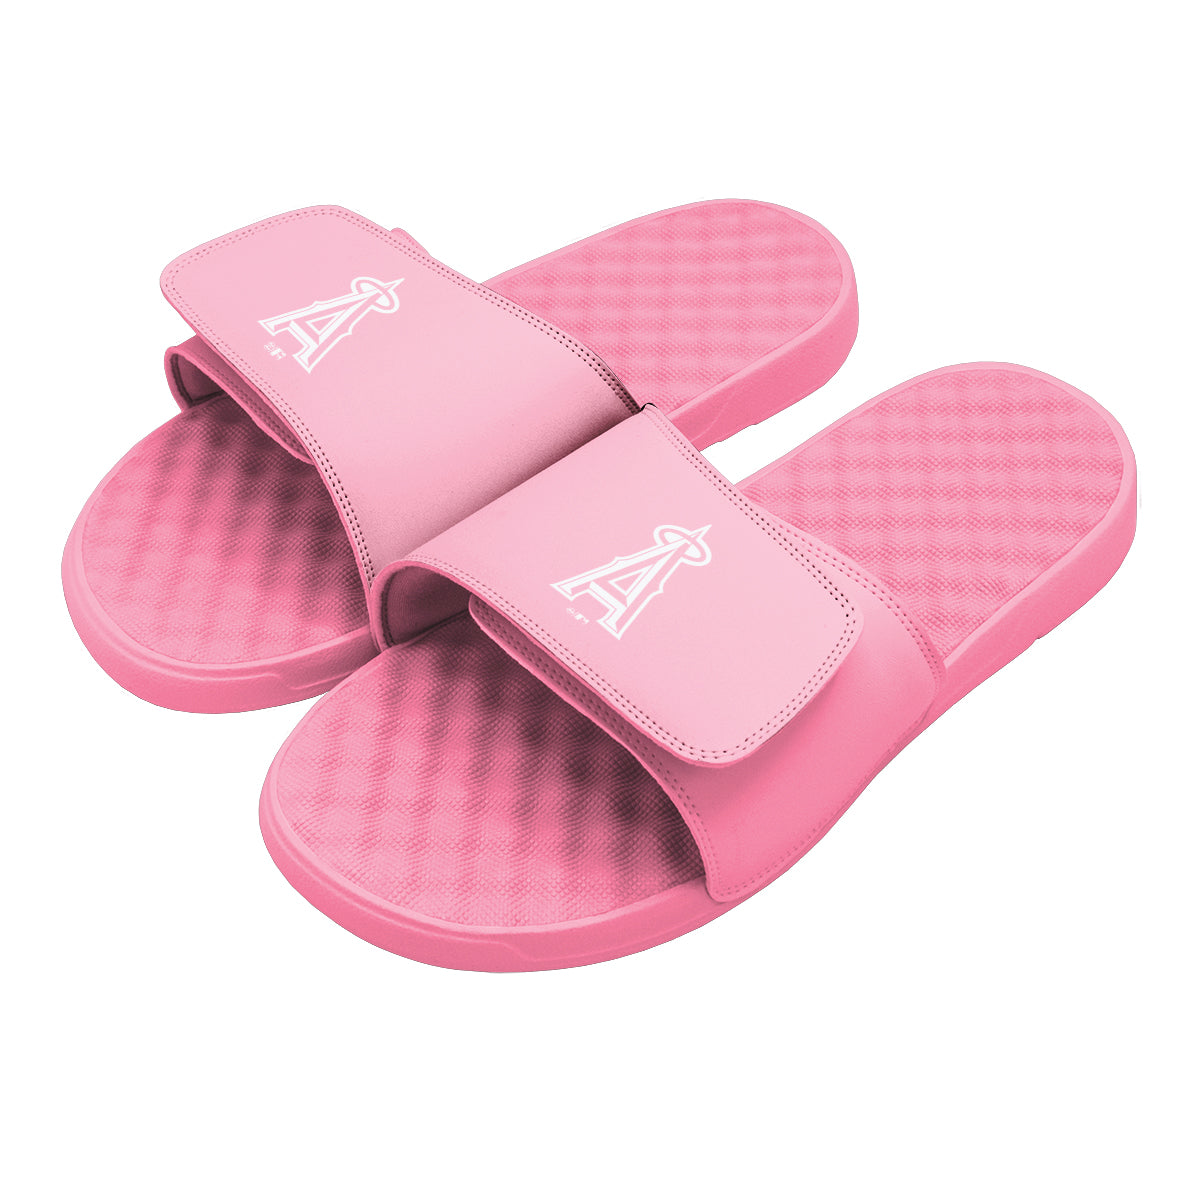 Los Angeles Angels Primary Pink Slides